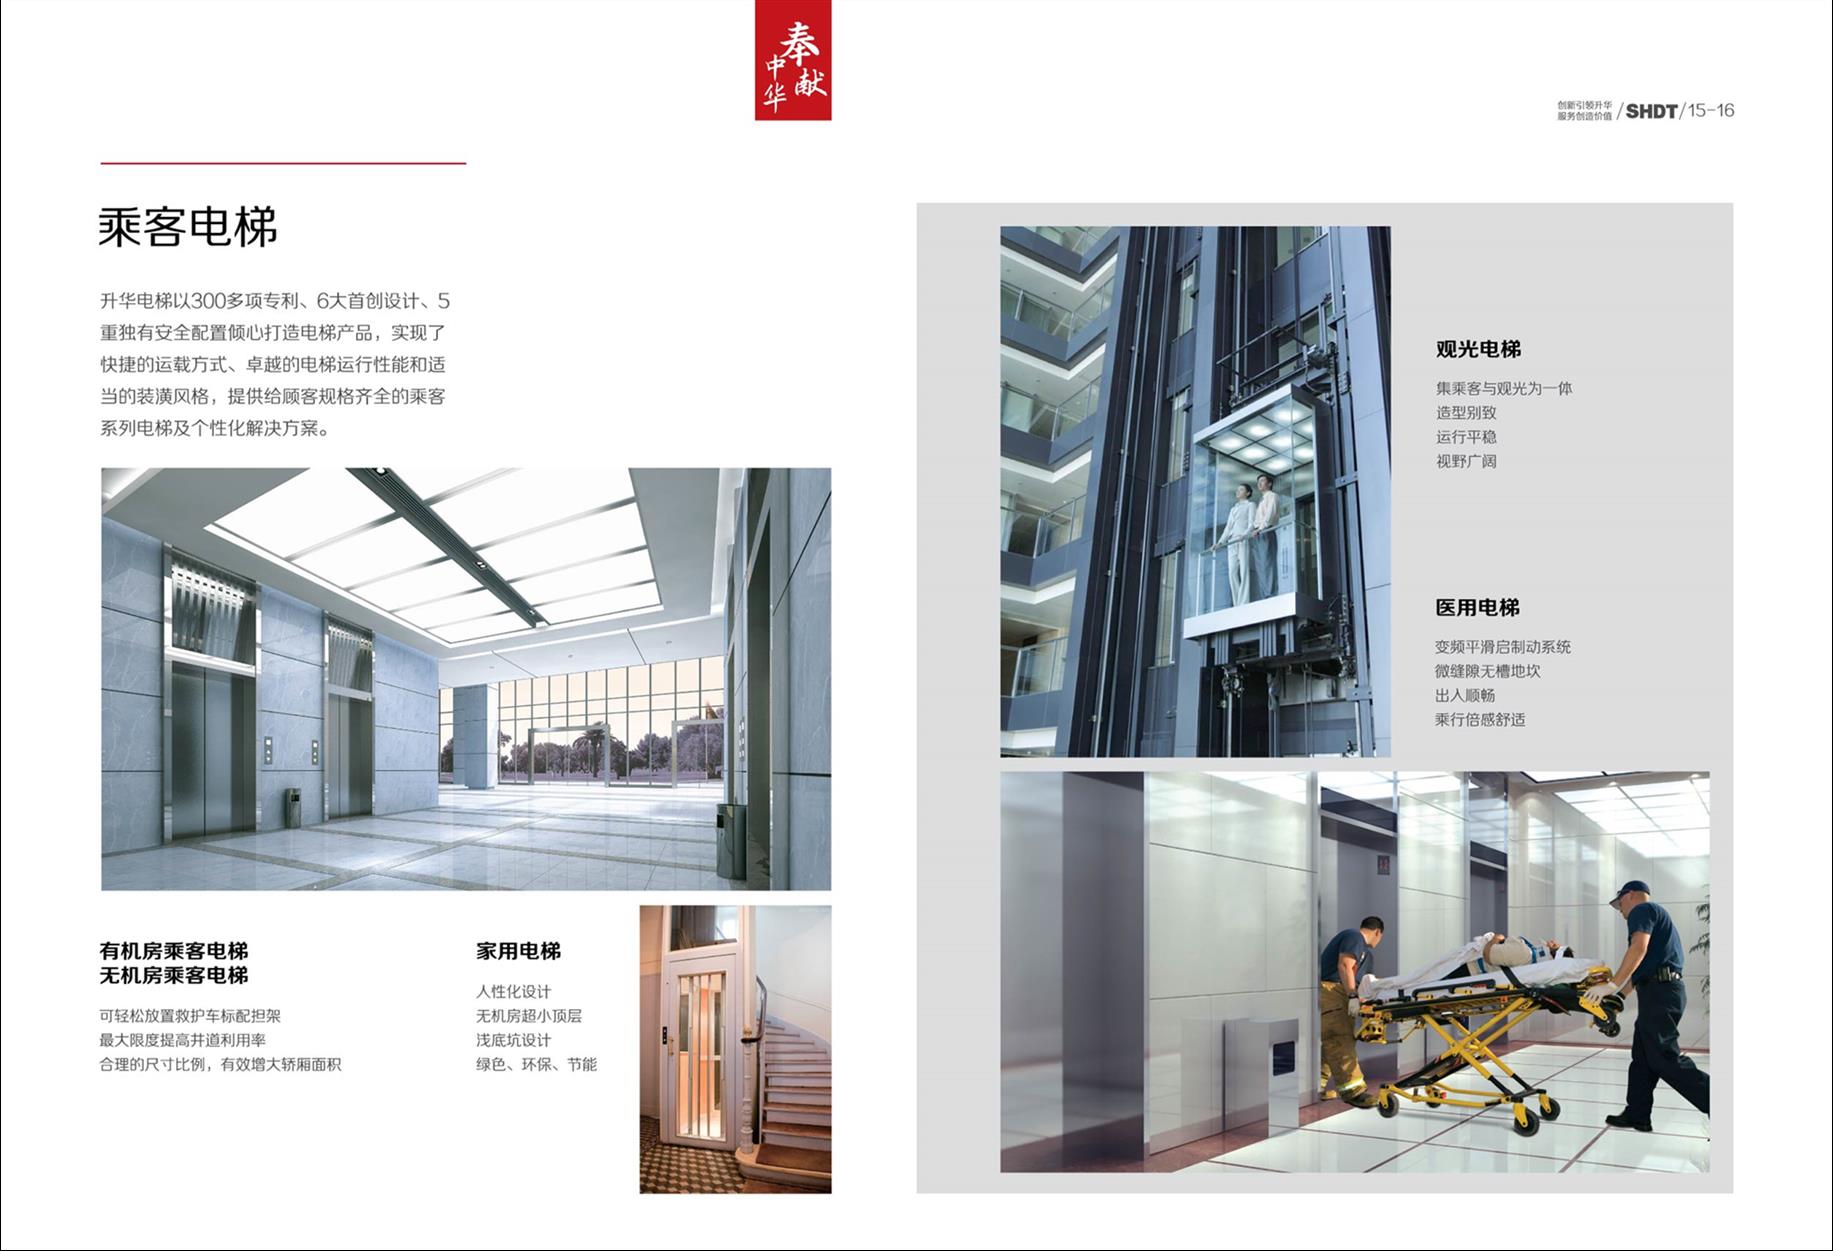 北京大兴区汽车电梯加装电梯厂家 北京升华电梯联系人 北京电梯厂家